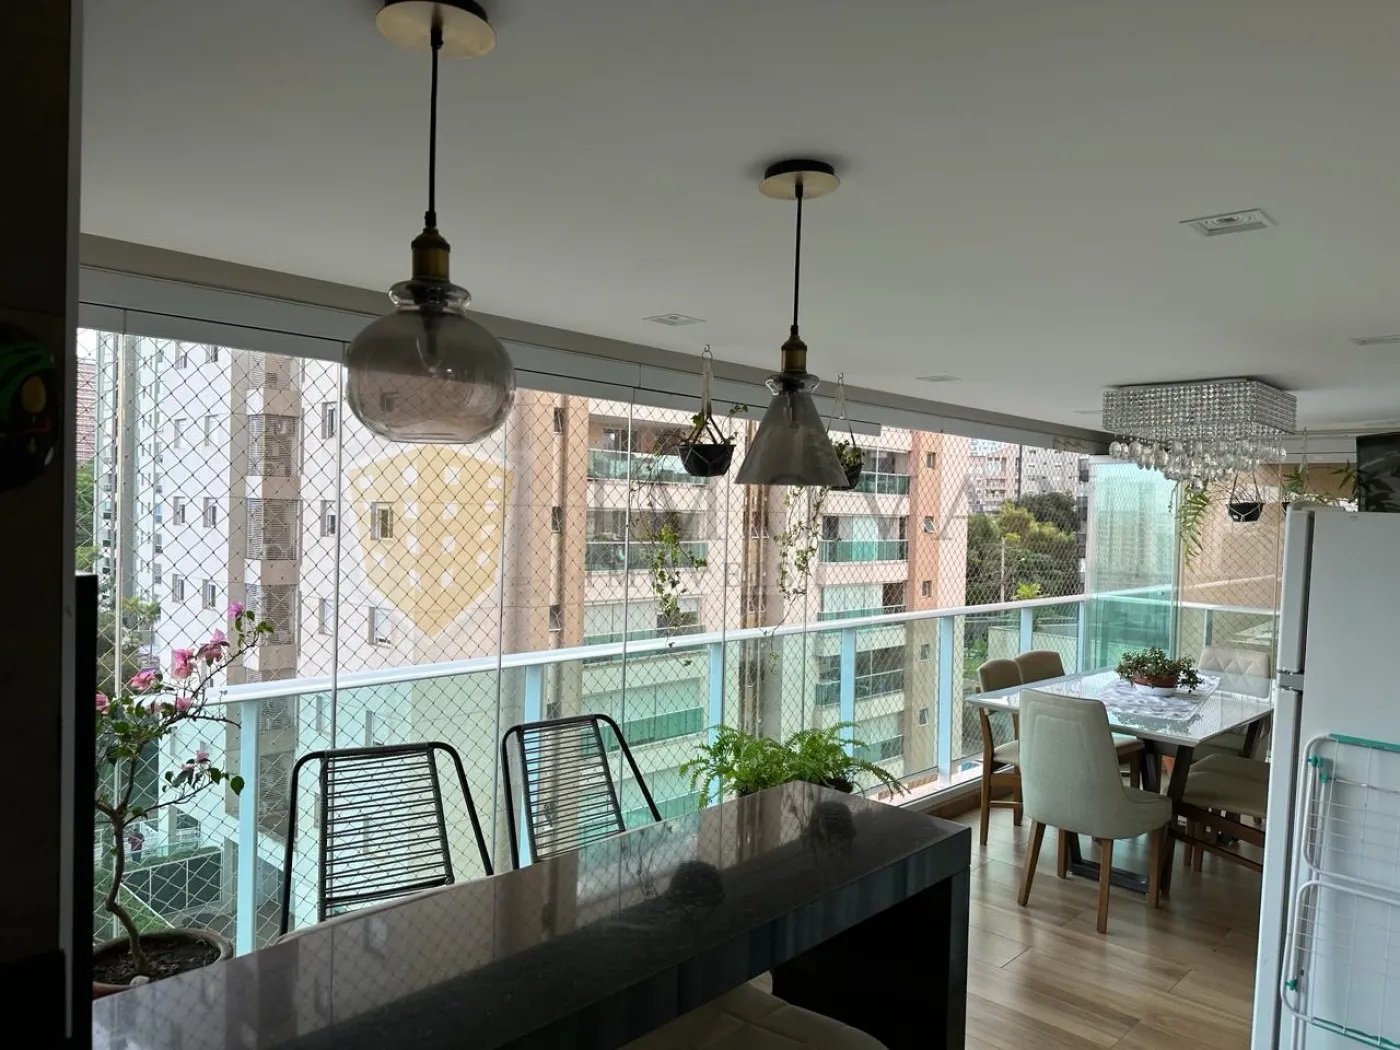 Comprar Apartamento / Padrão em Ribeirão Preto R$ 950.000,00 - Foto 6